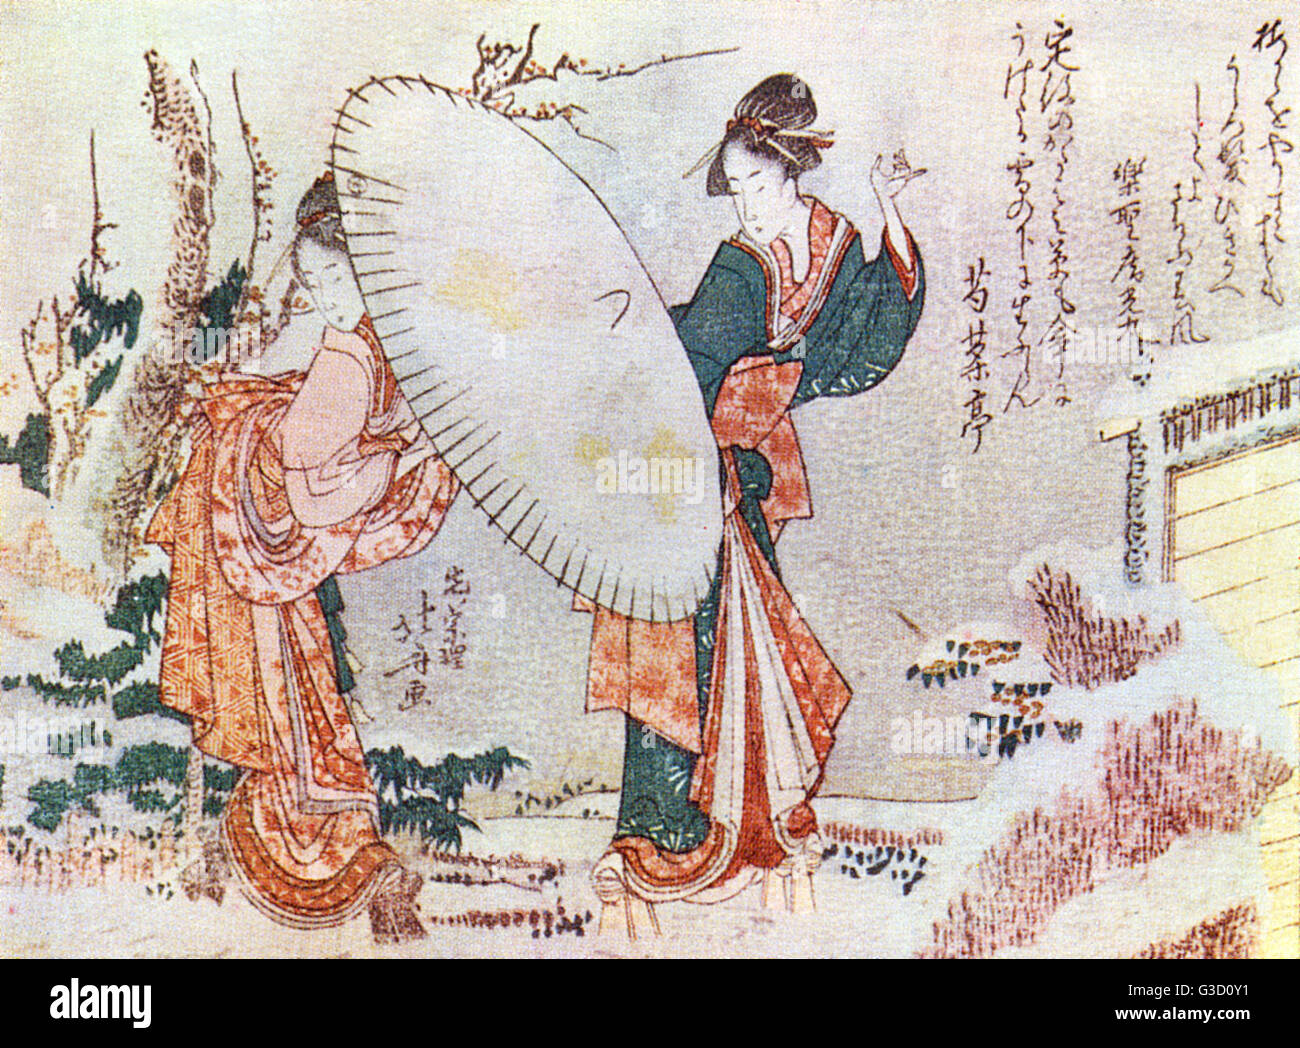 Reproduction d'une gravure sur bois par Katsushika Hokusai (1760 - 1849) intitulée : "fille qui marche dans la neige' Date : vers début du xixe siècle Banque D'Images